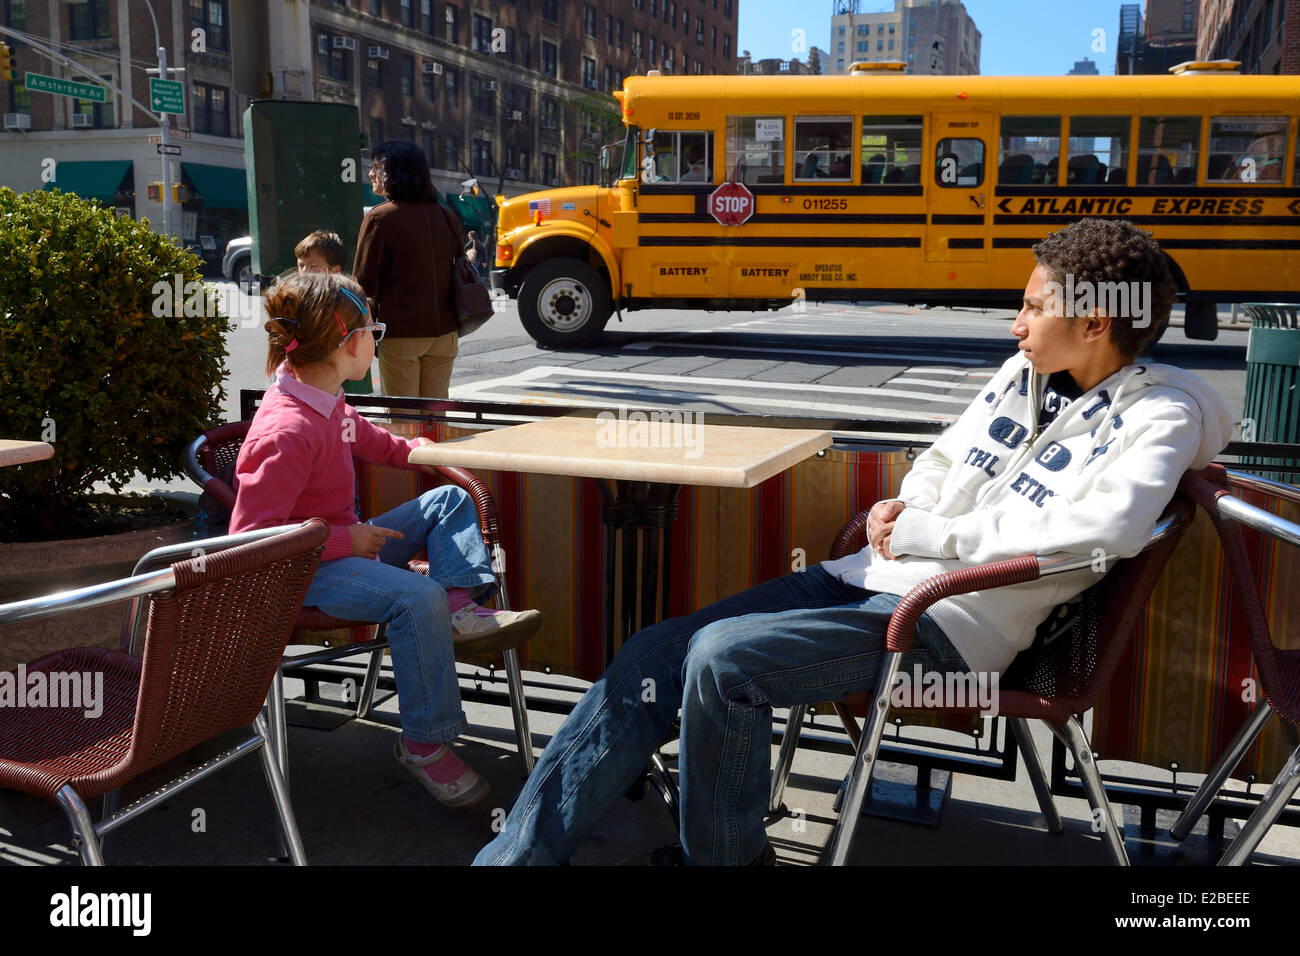 Estados Unidos, la ciudad de Nueva York, Manhattan, Upper West Side, el autobús escolar pasa delante de una terraza de un café en la esquina de 79th Street y la Avenida Amsterdam Foto de stock